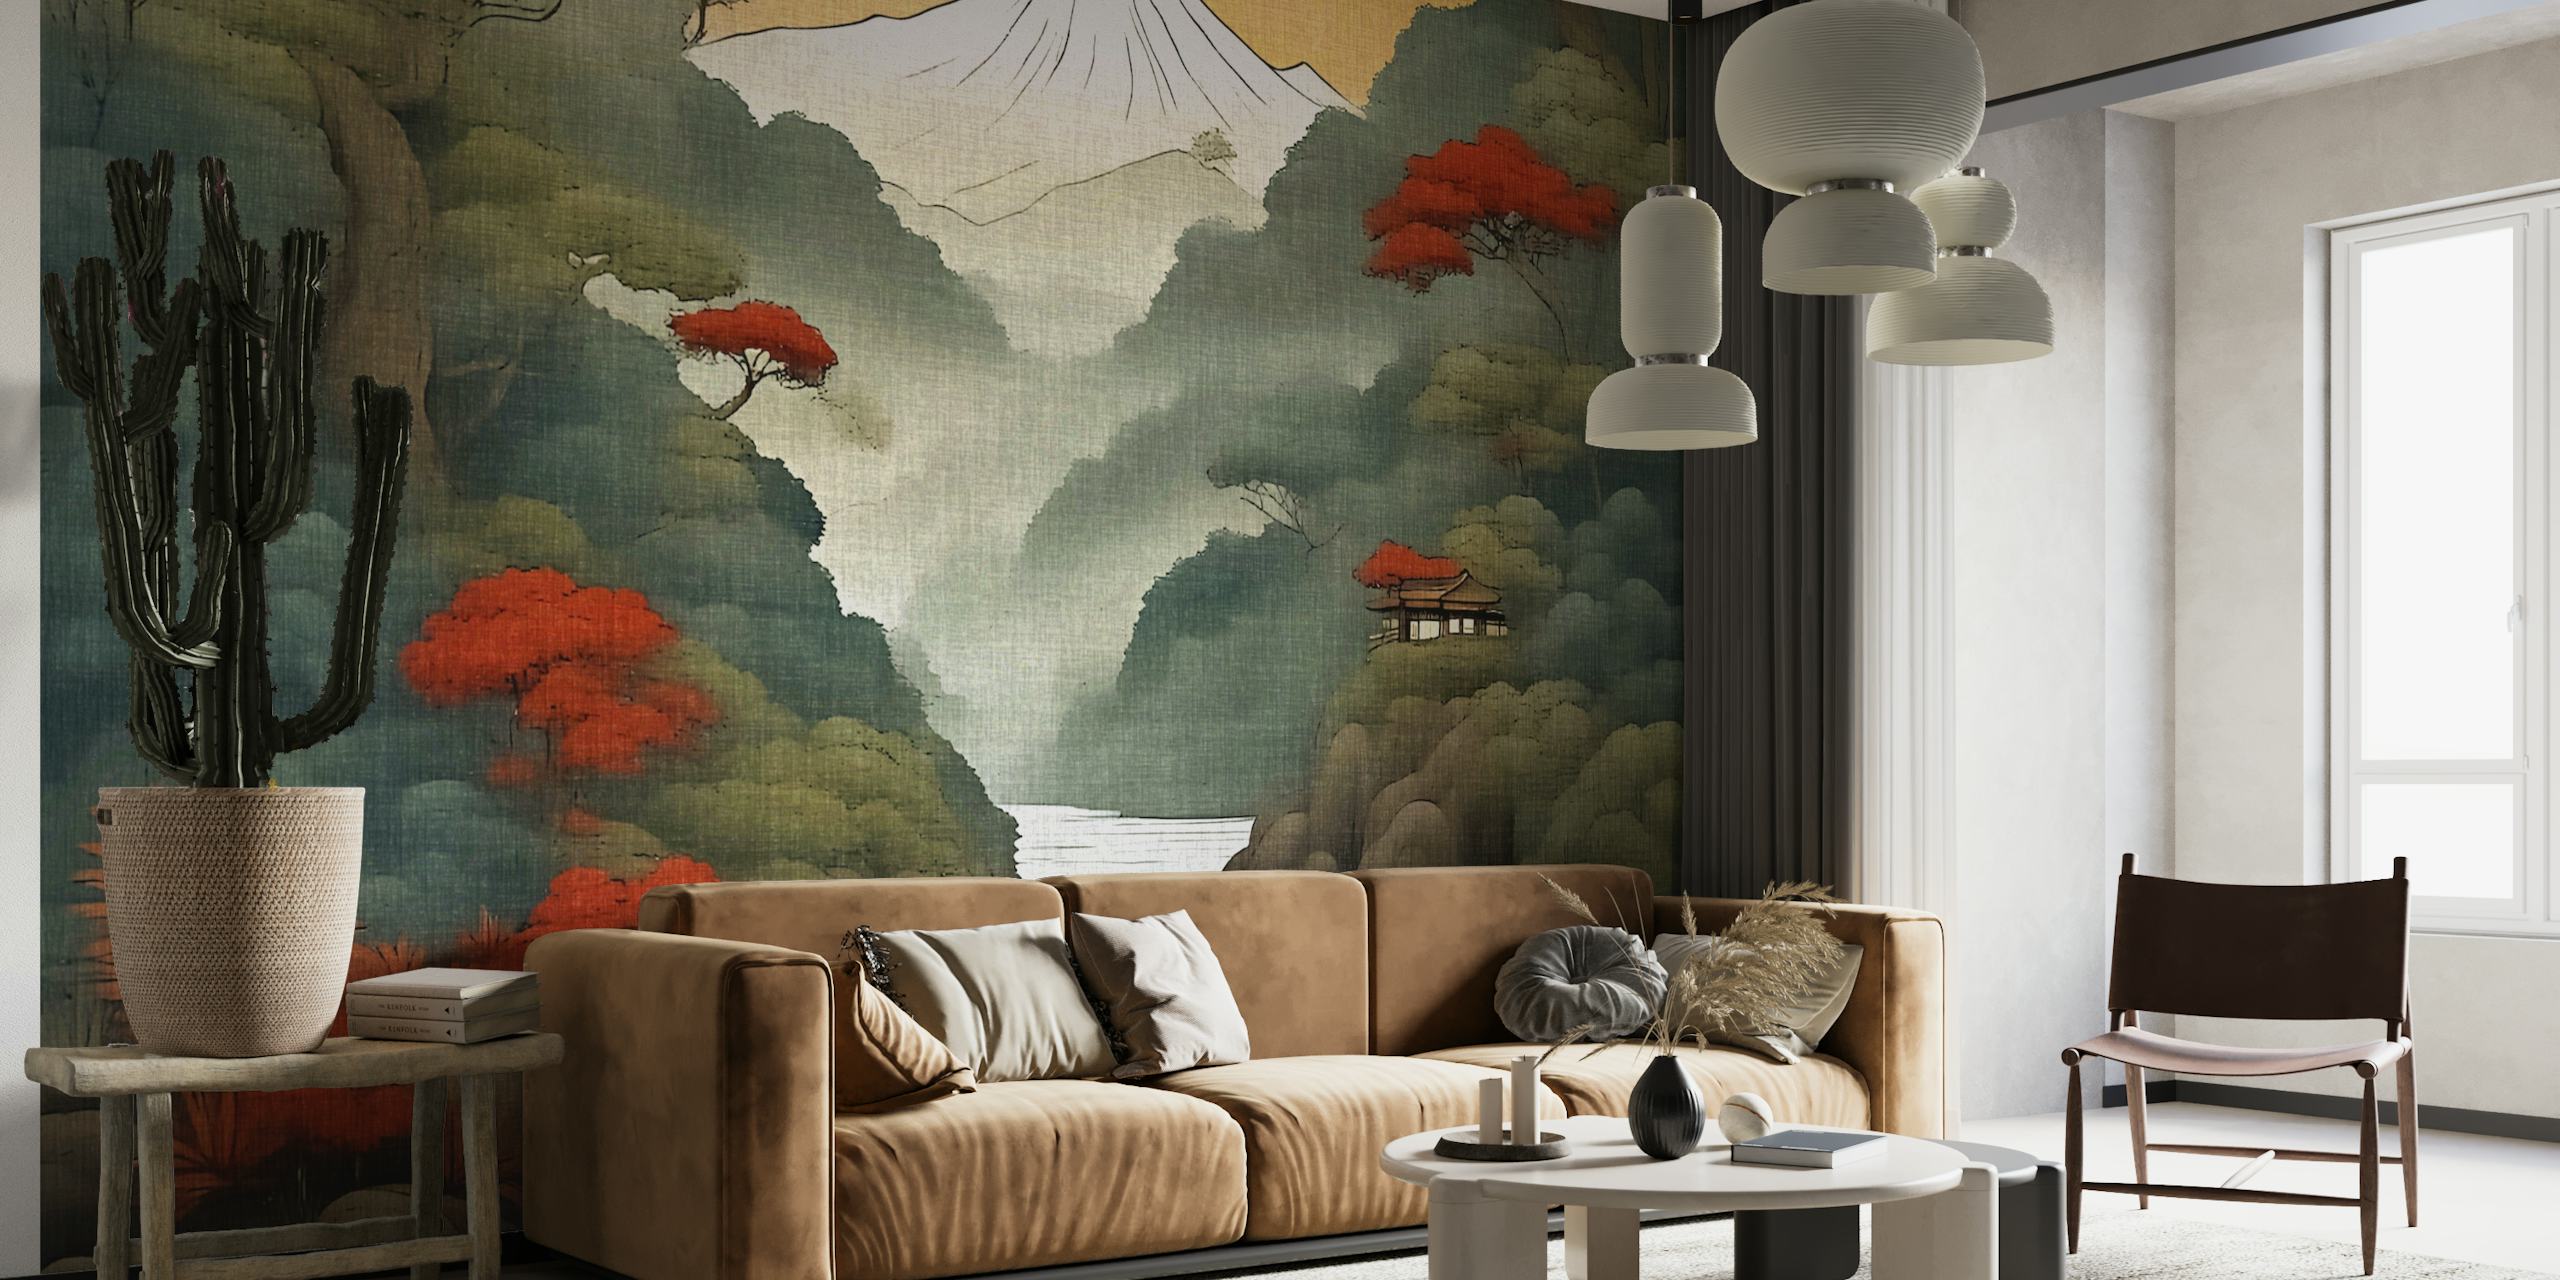 Traditionelle japanische Landschaftswandmalerei mit dem Fuji, roten Ahornblättern und einem ruhigen Fluss